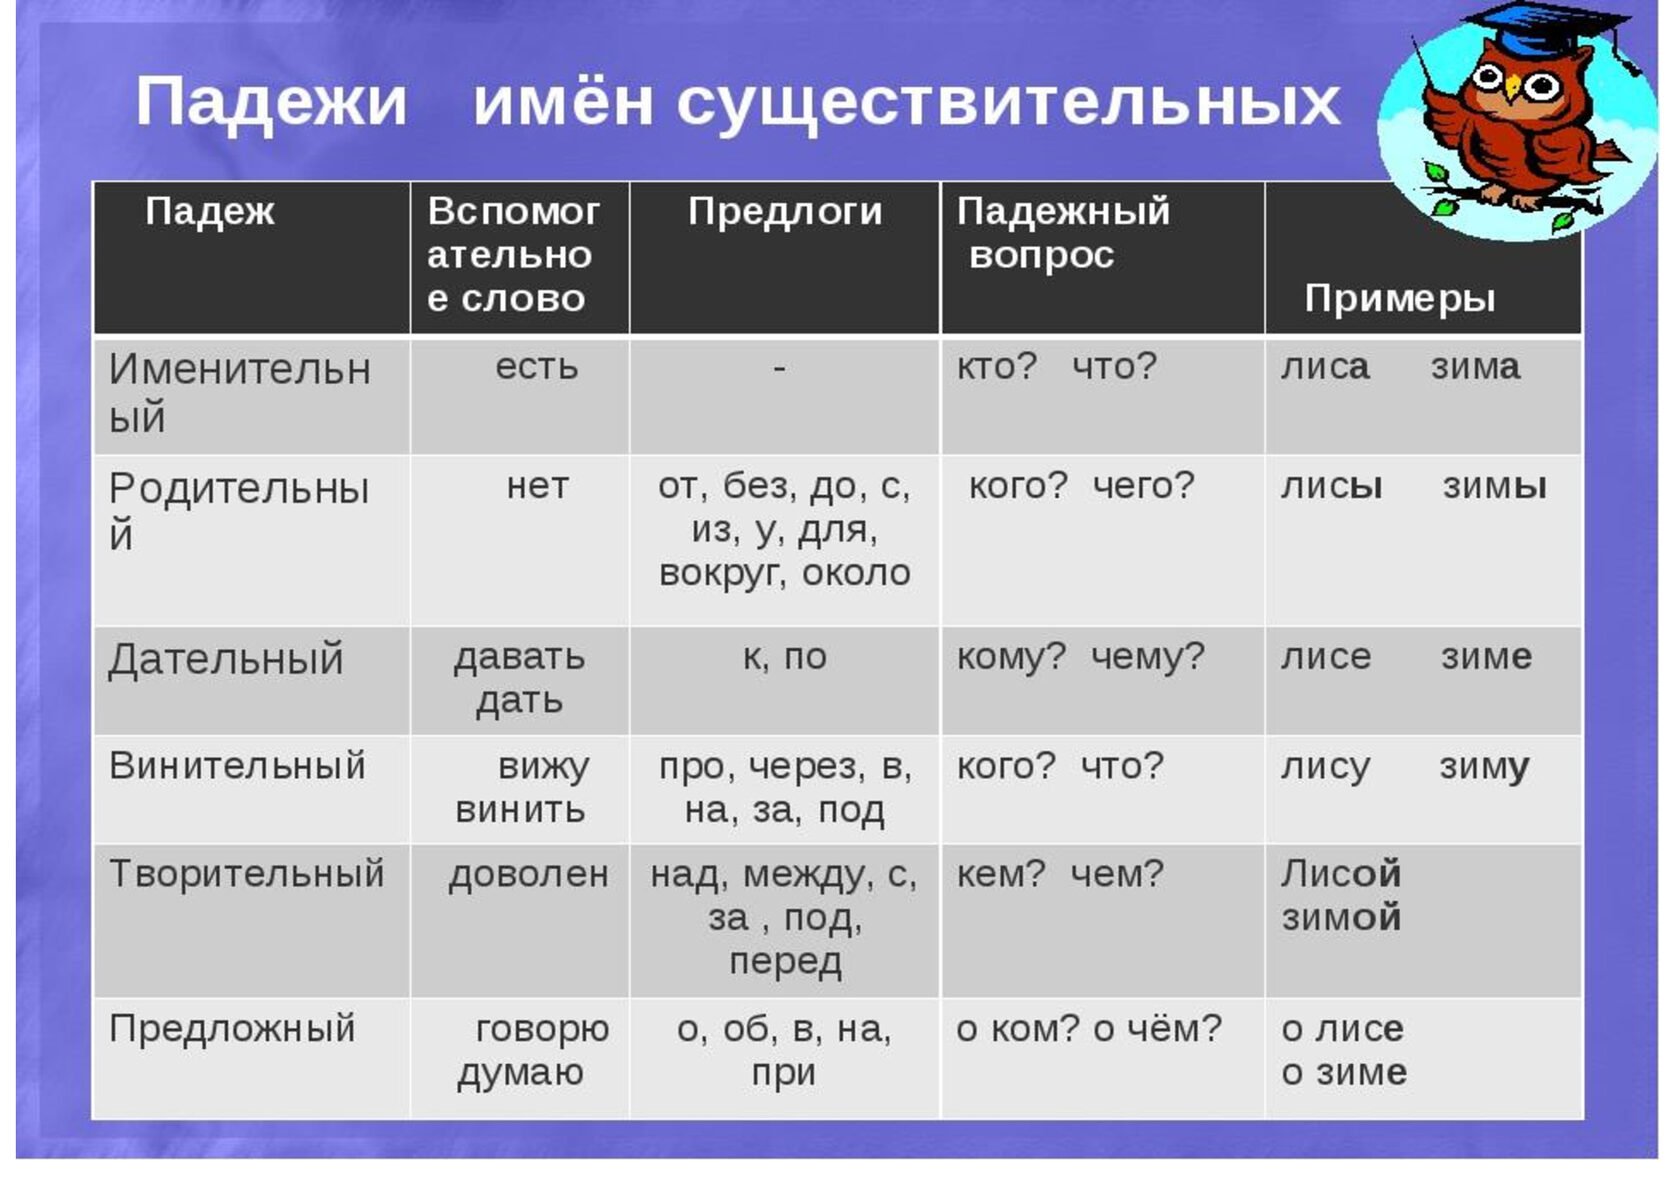 Как определять падежи в русском